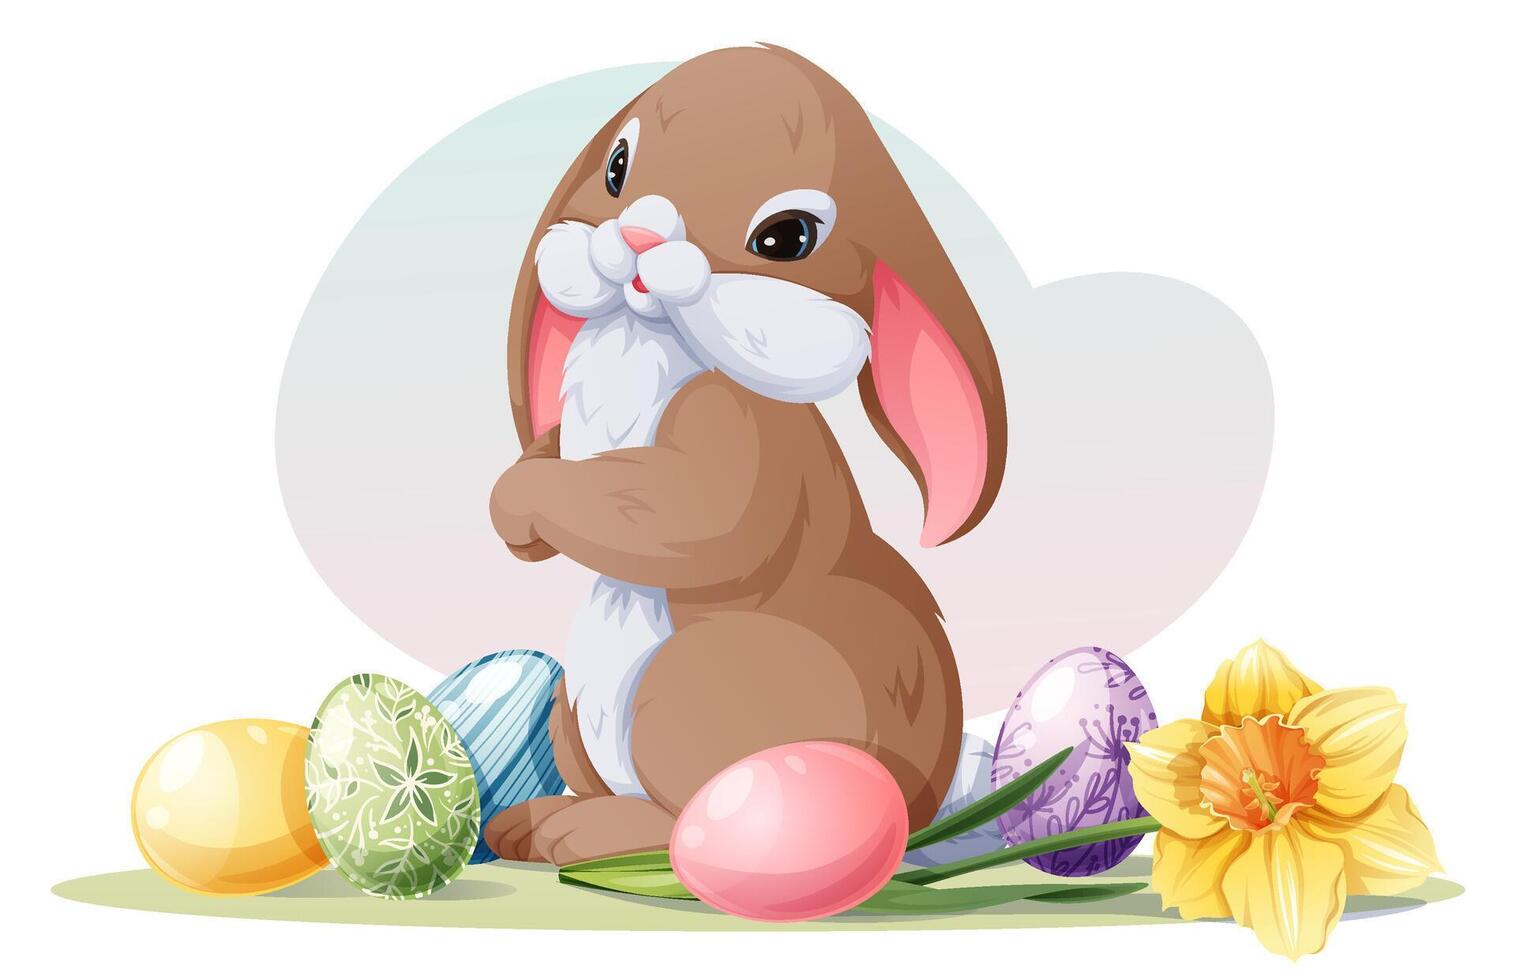 påsk kanin med ägg och narciss blomma. vektor vår illustration för påsk.